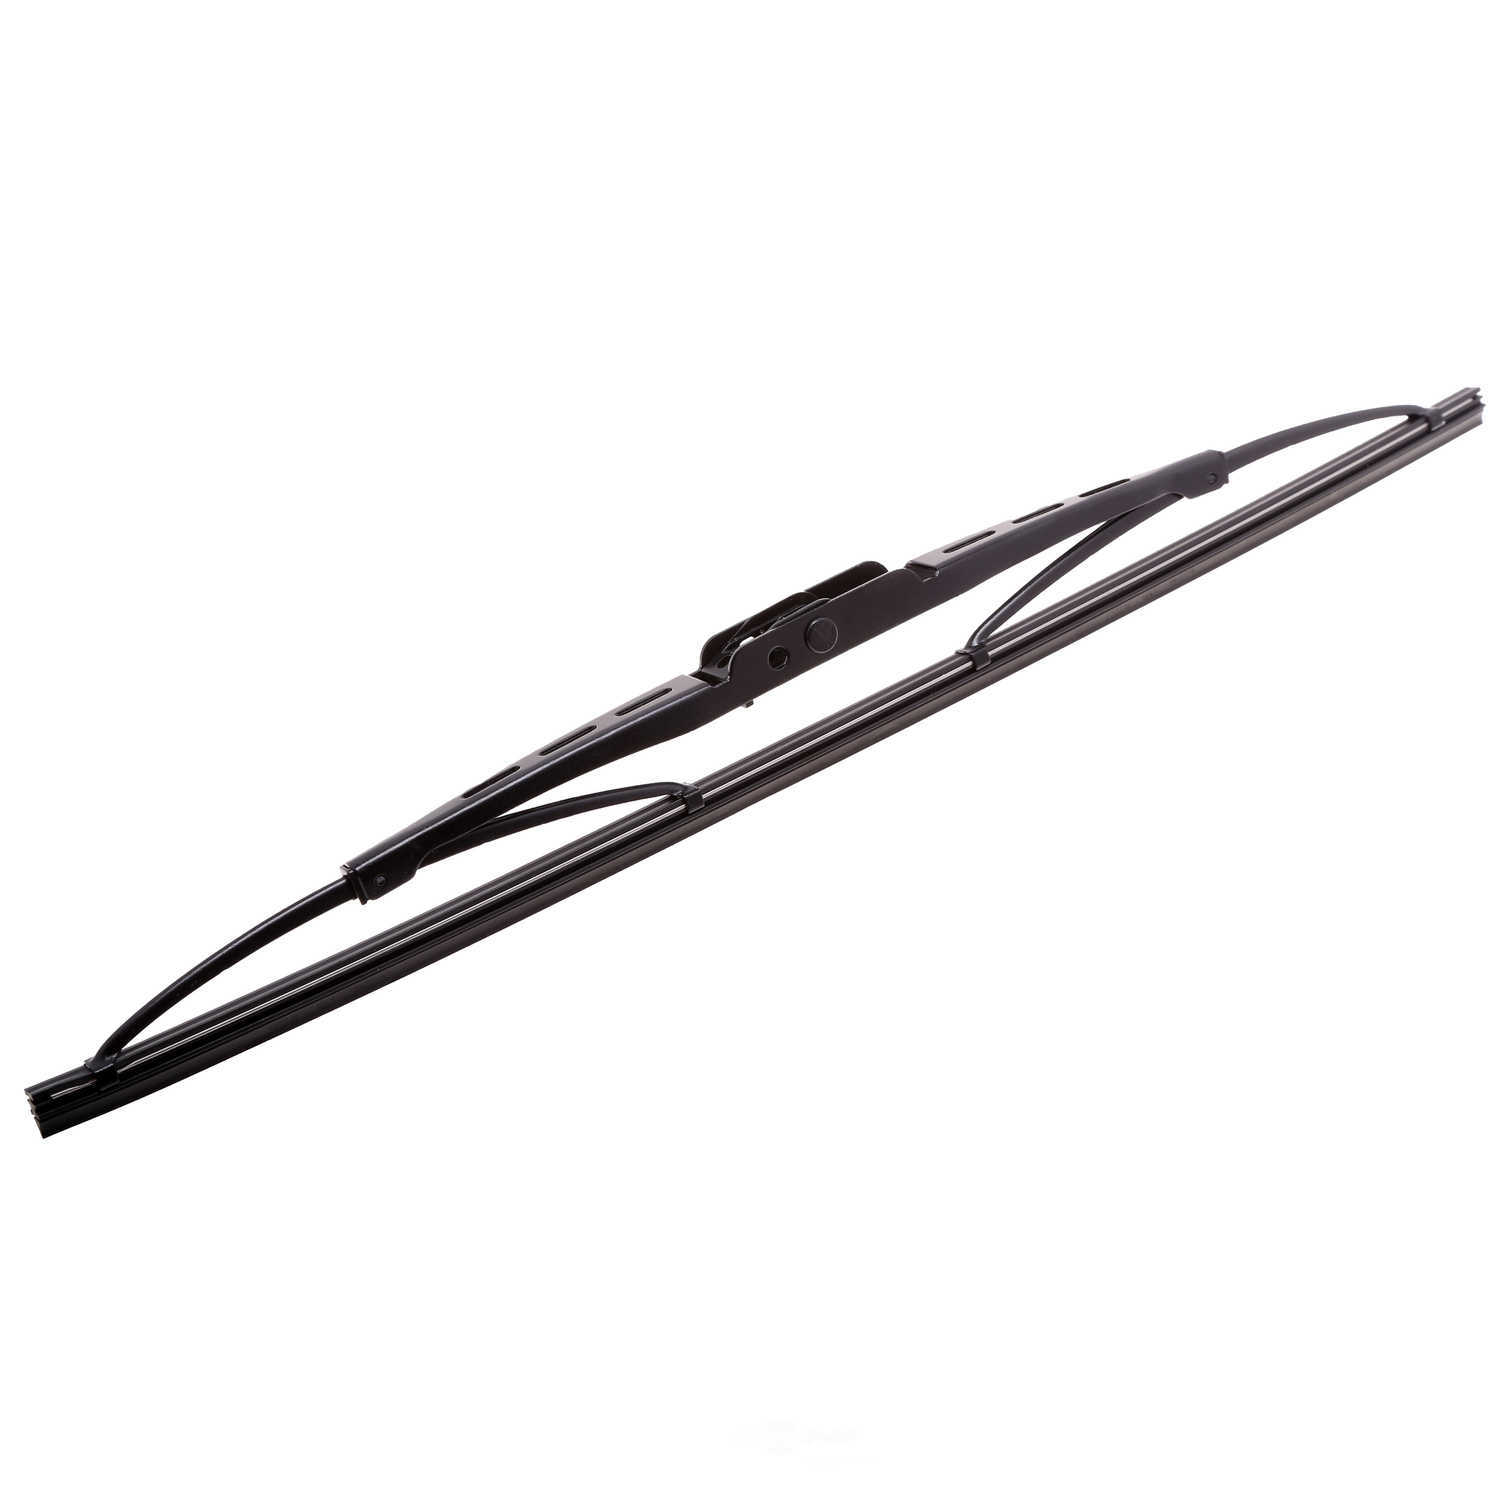 ANCO WIPER PRODUCTS - ANCO 31-Series Wiper Blade - ANC 31-15